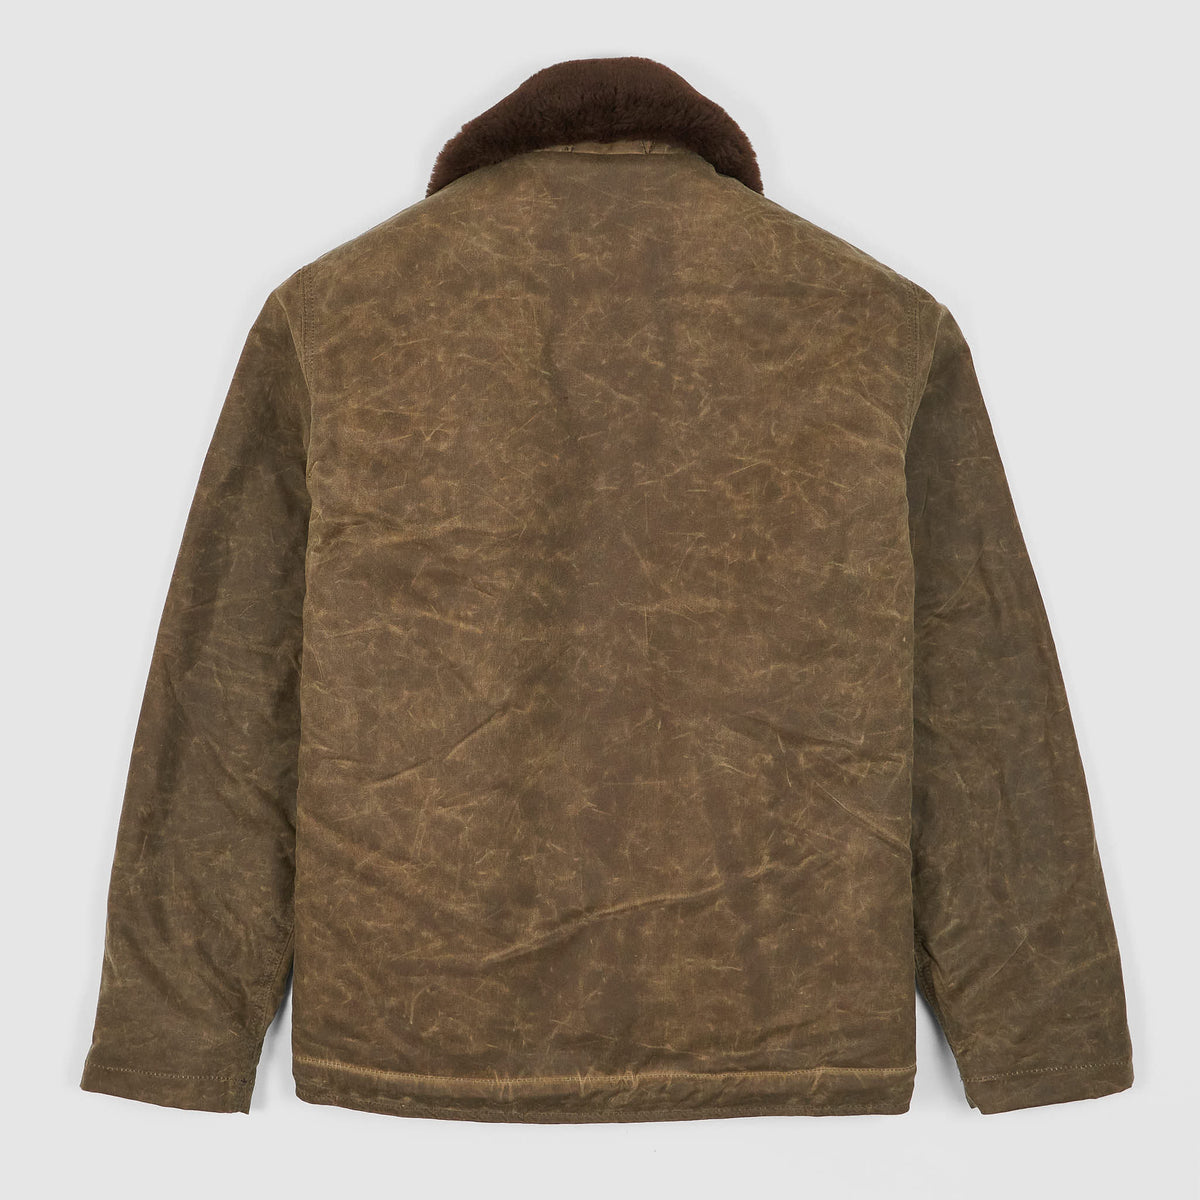 Dehen 1920 N-1 US-Deck Jacket Shearling Version